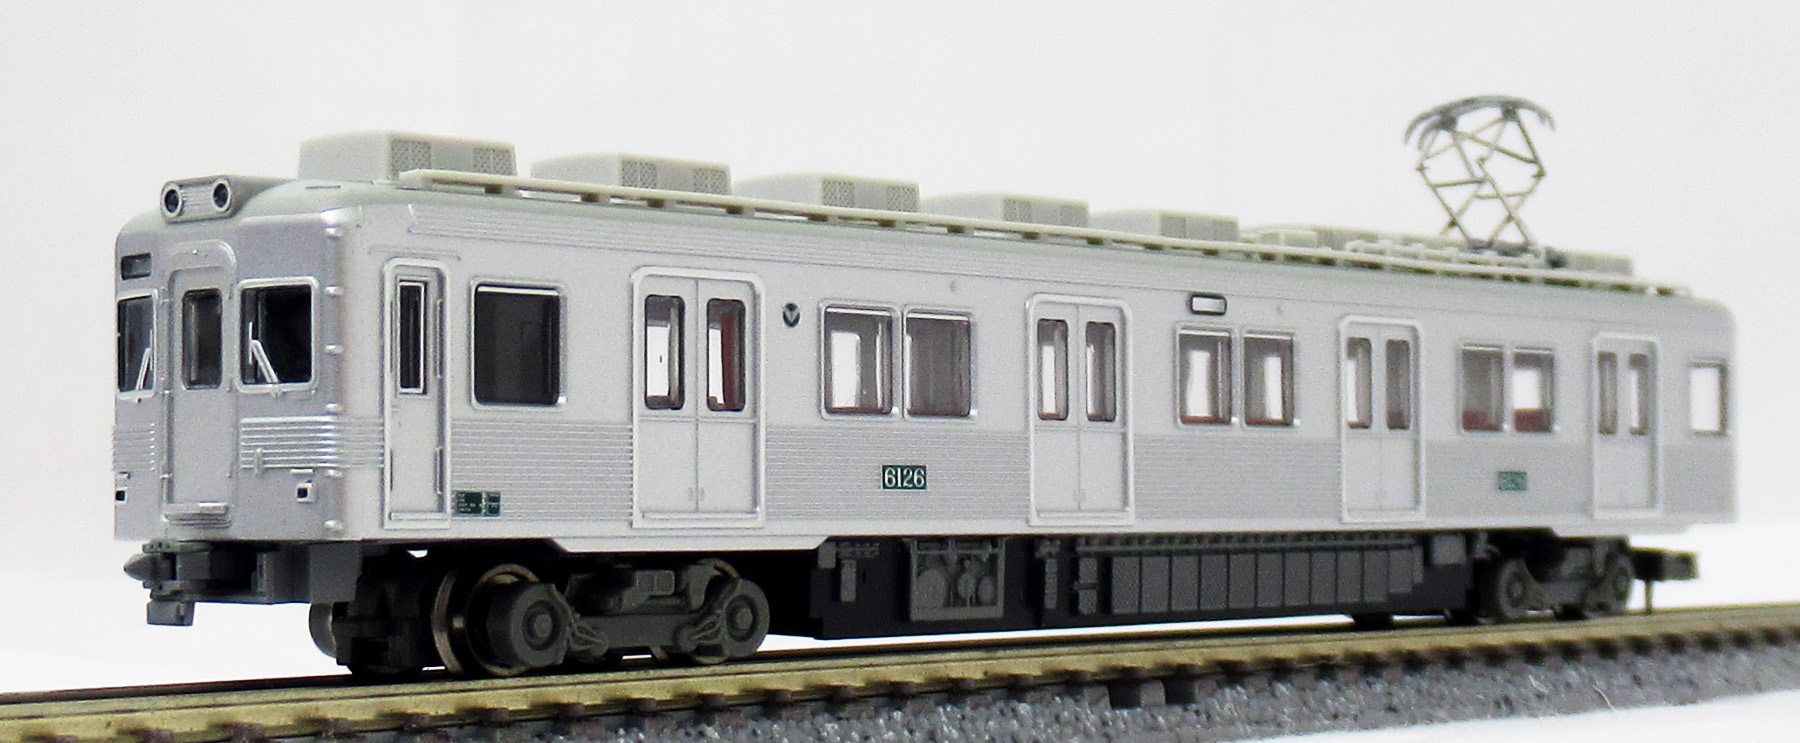 【初回限定】マイクロエース A-6350 南海6100系 旧塗装 4両セット 私鉄車輌